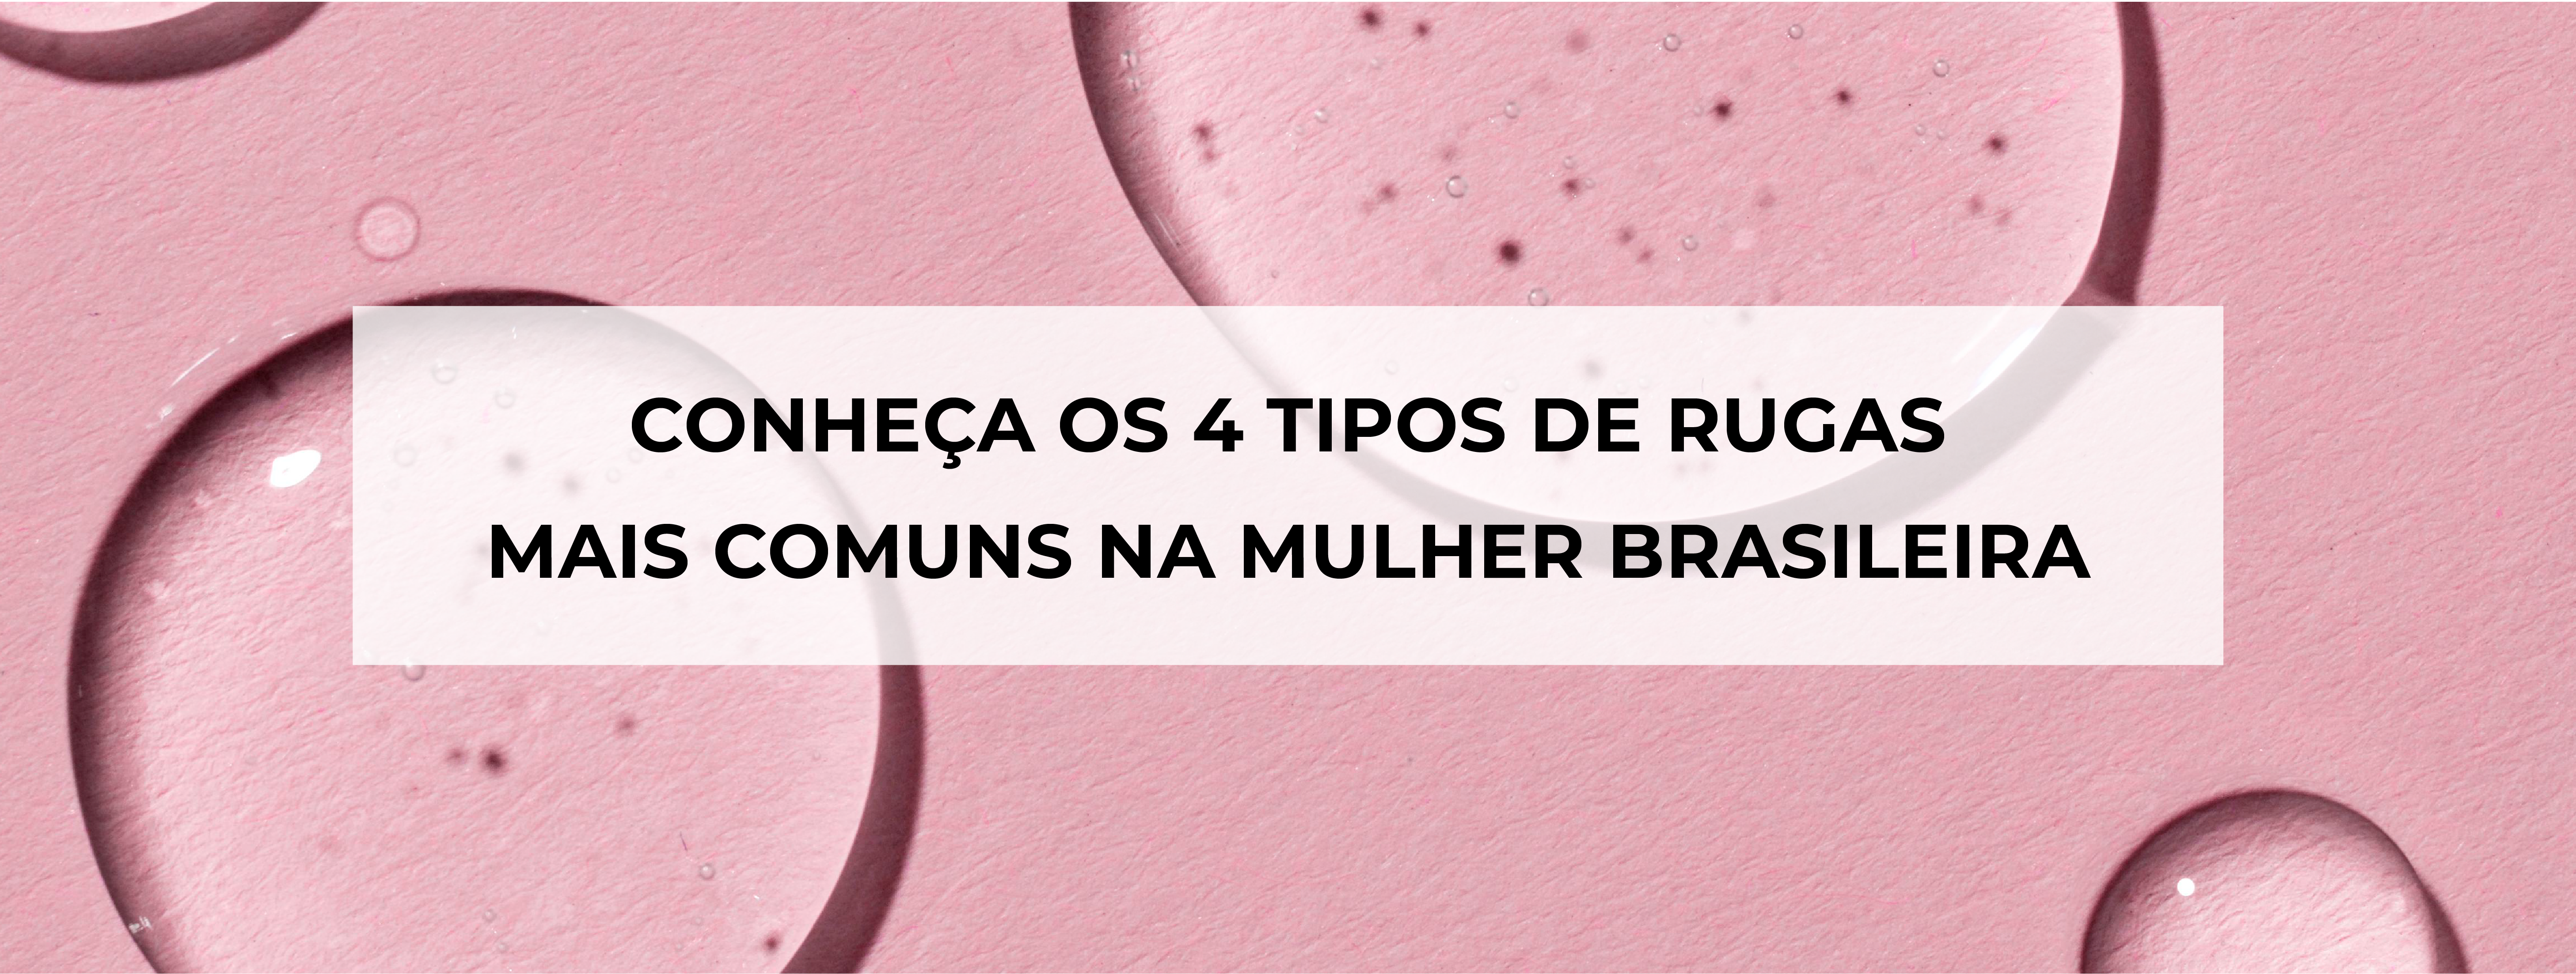 Rugas no rosto: conheça os 4 tipos mais comuns na mulher brasileira!